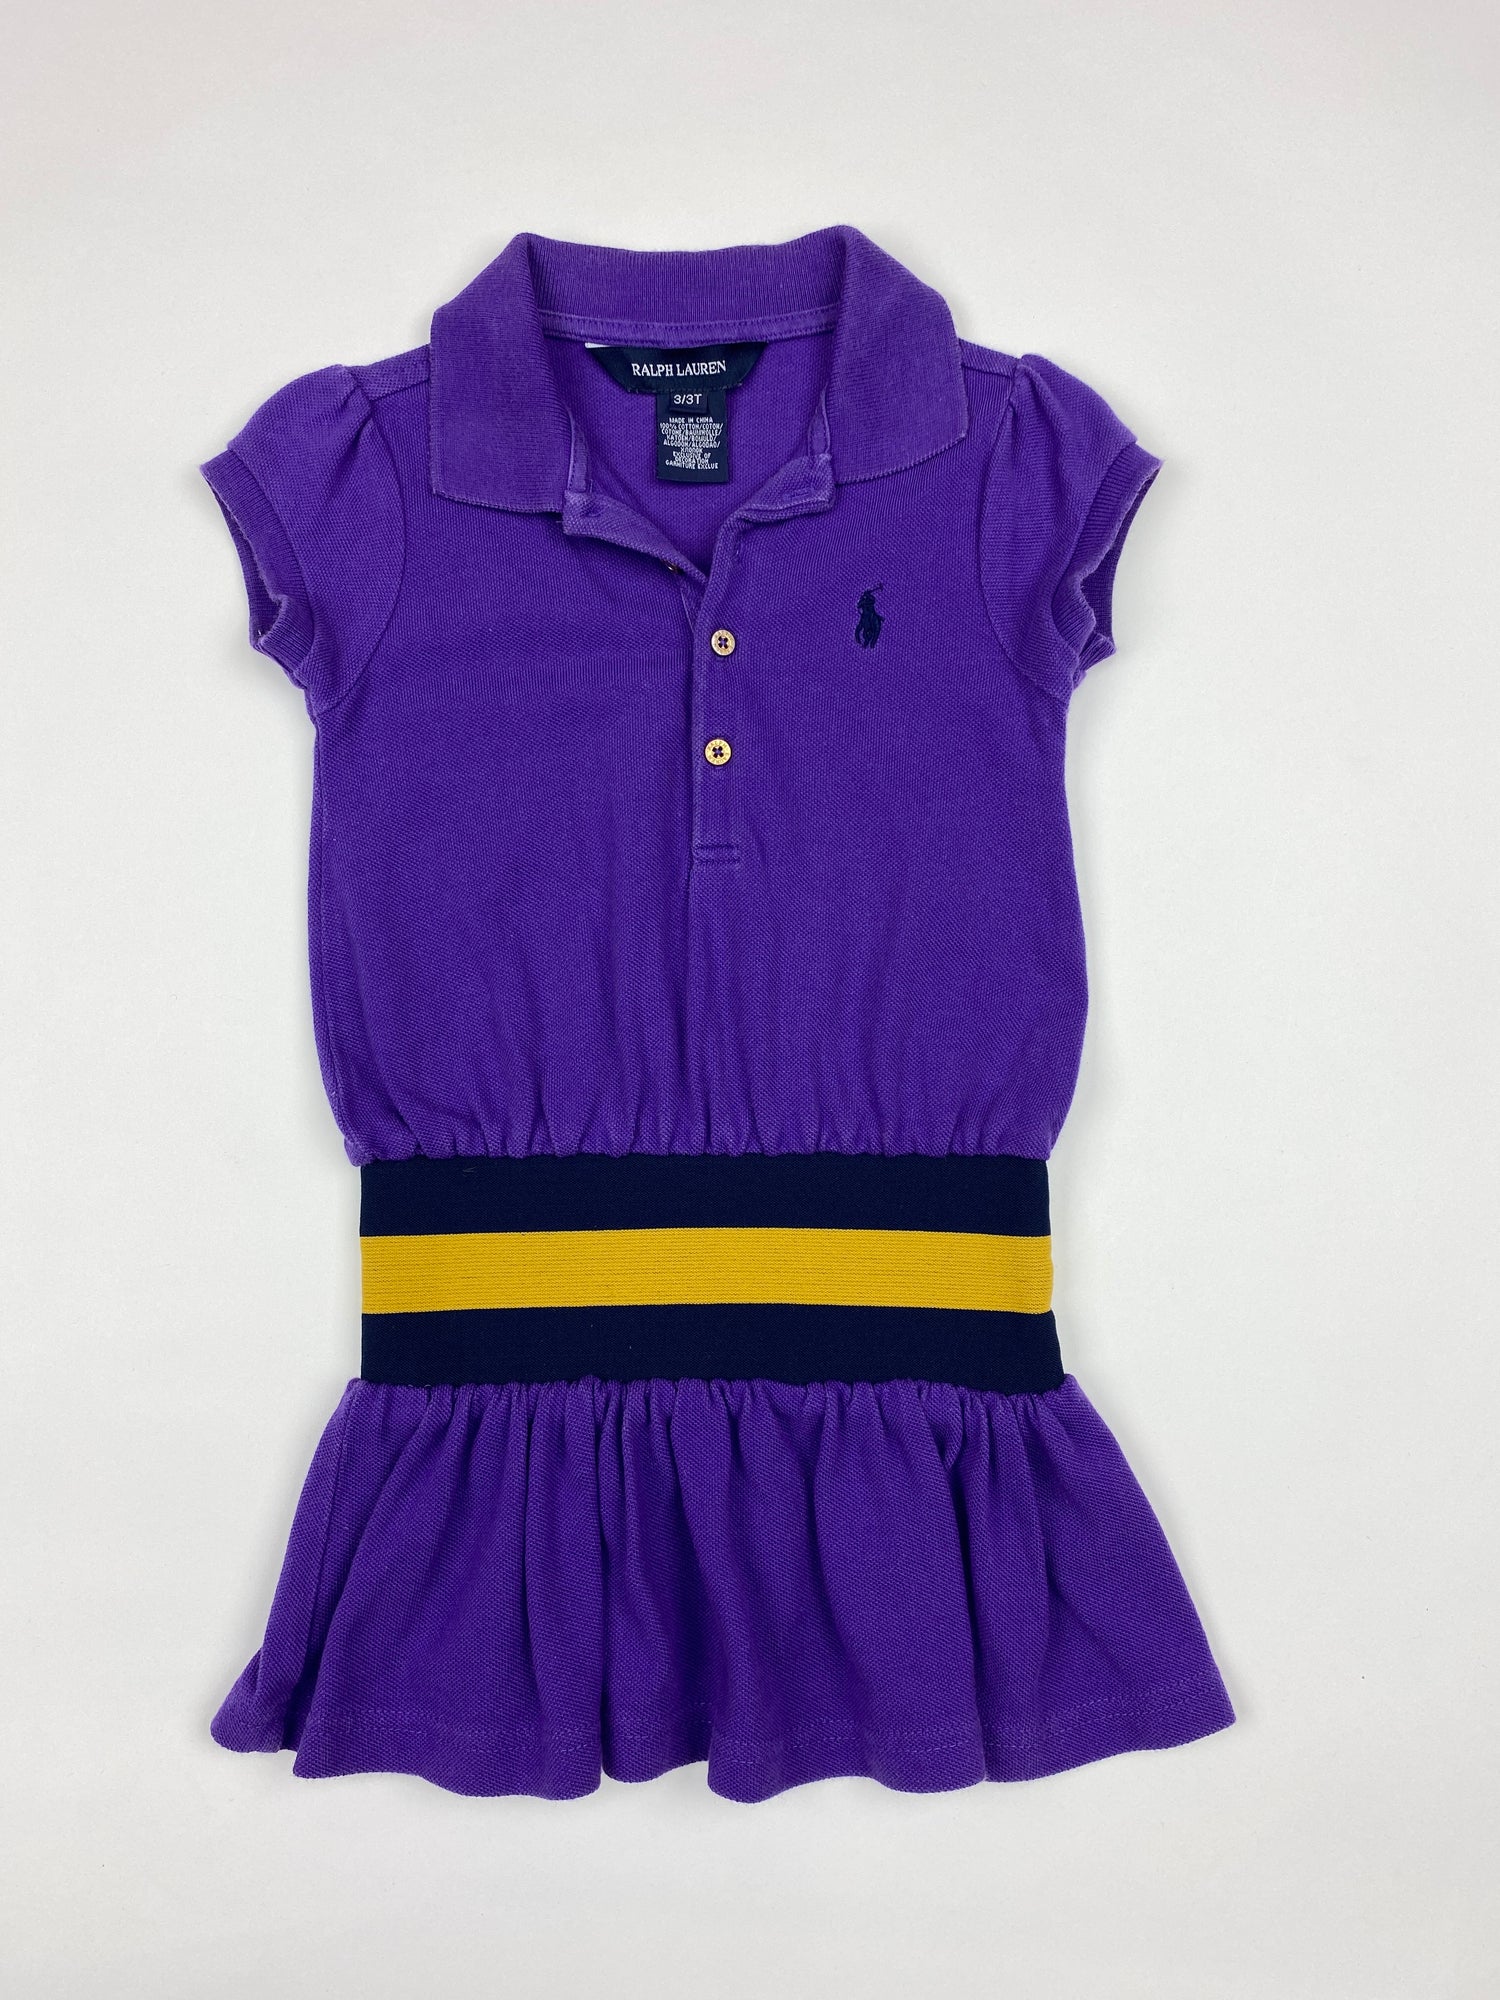 Ralph Lauren Girls Tennis Dress – Outgrew